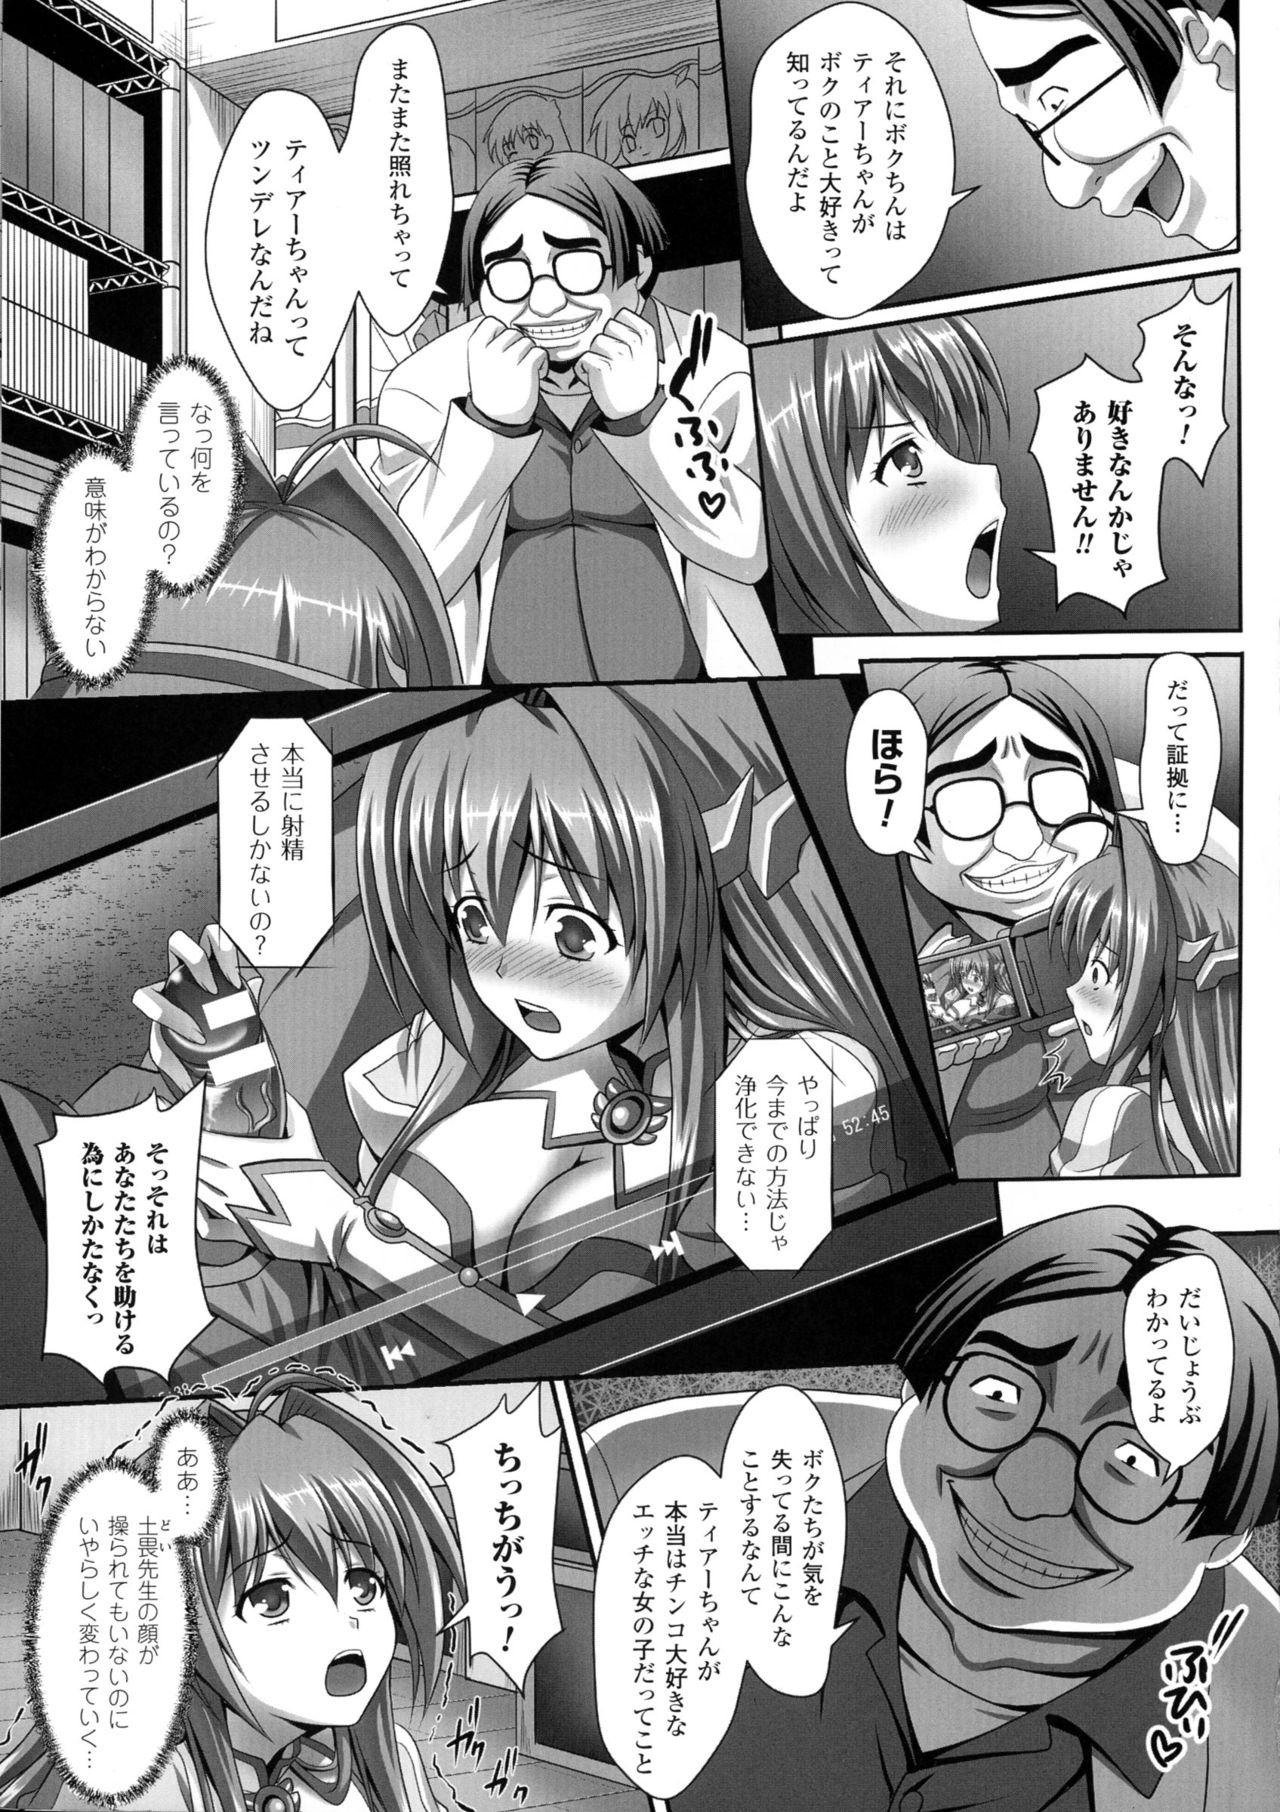 Shesafreak Seigi no Heroine Kangoku File DX Vol. 3 Putita - Page 13